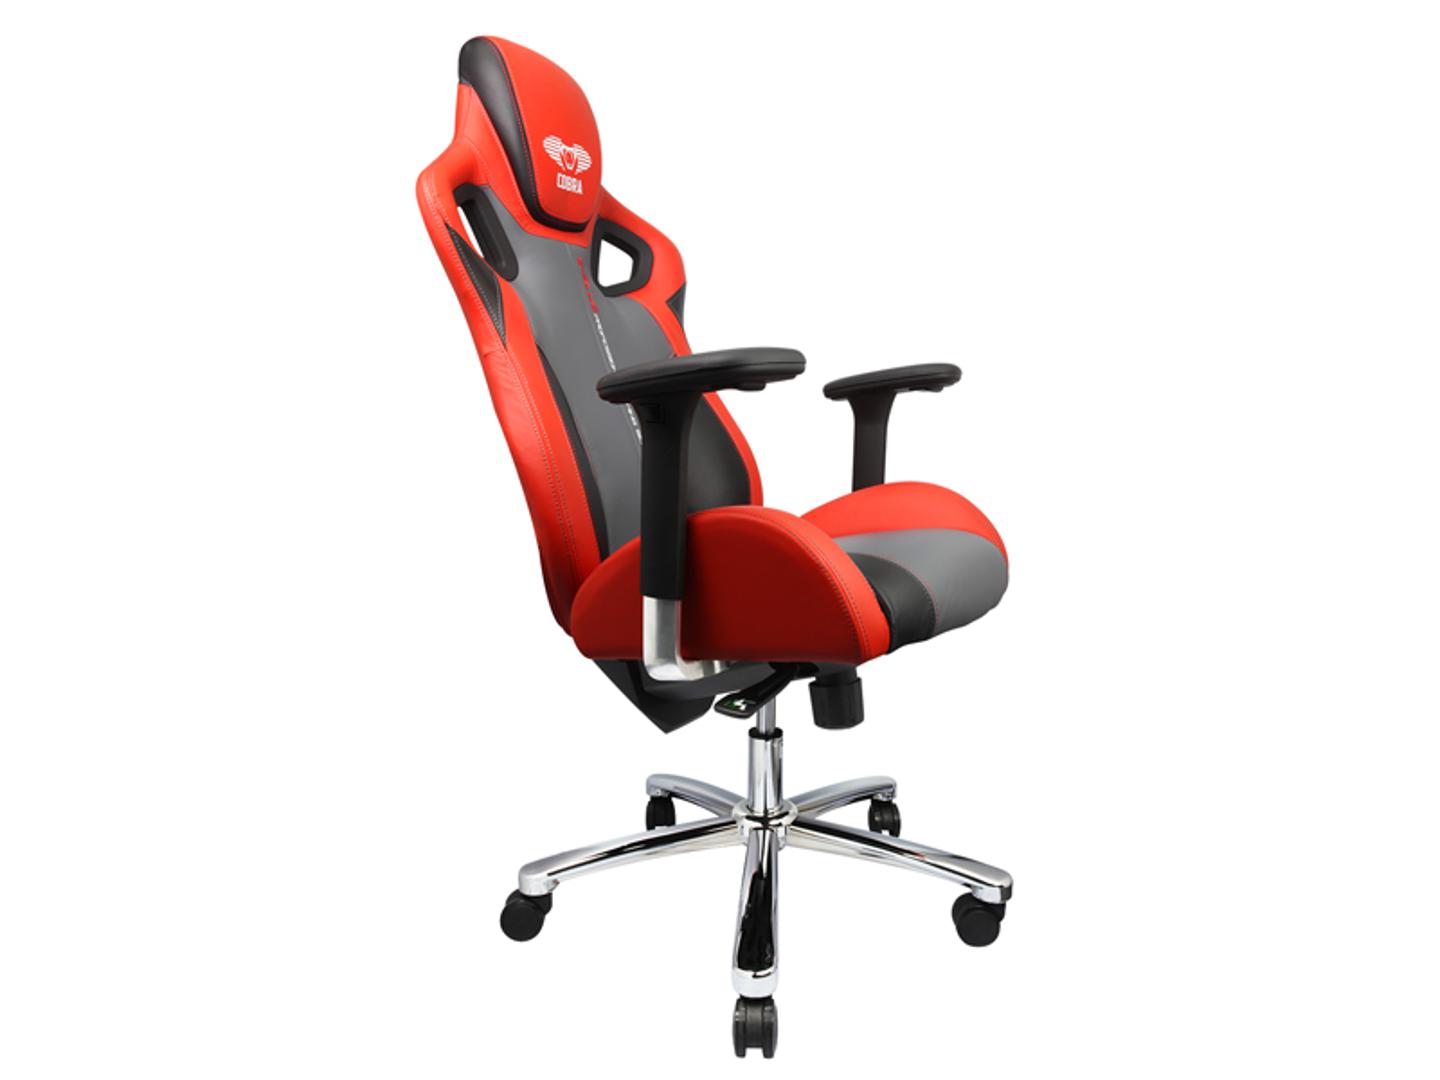 E-blue stolica Cobra Red/Grey: Za savršeno gaming iskustvo, osim dobrog računala i igre, potreban je i udobna gaming stolica. Više na: www.megastore.hr